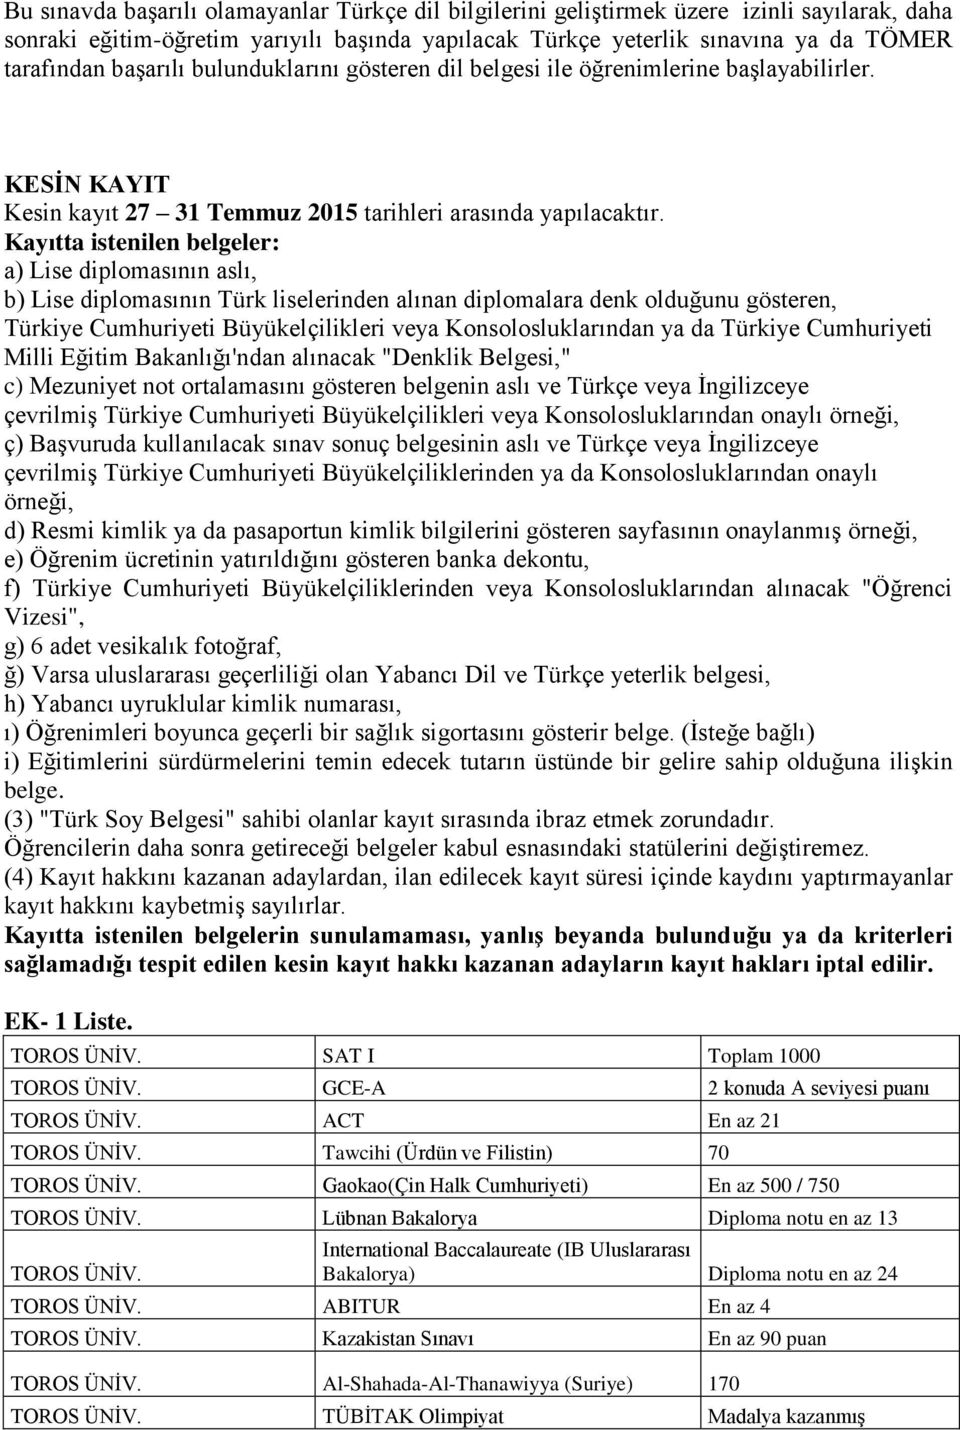 Kayıtta istenilen belgeler: a) Lise diplomasının aslı, b) Lise diplomasının Türk liselerinden alınan diplomalara denk olduğunu gösteren, Türkiye Cumhuriyeti Büyükelçilikleri veya Konsolosluklarından